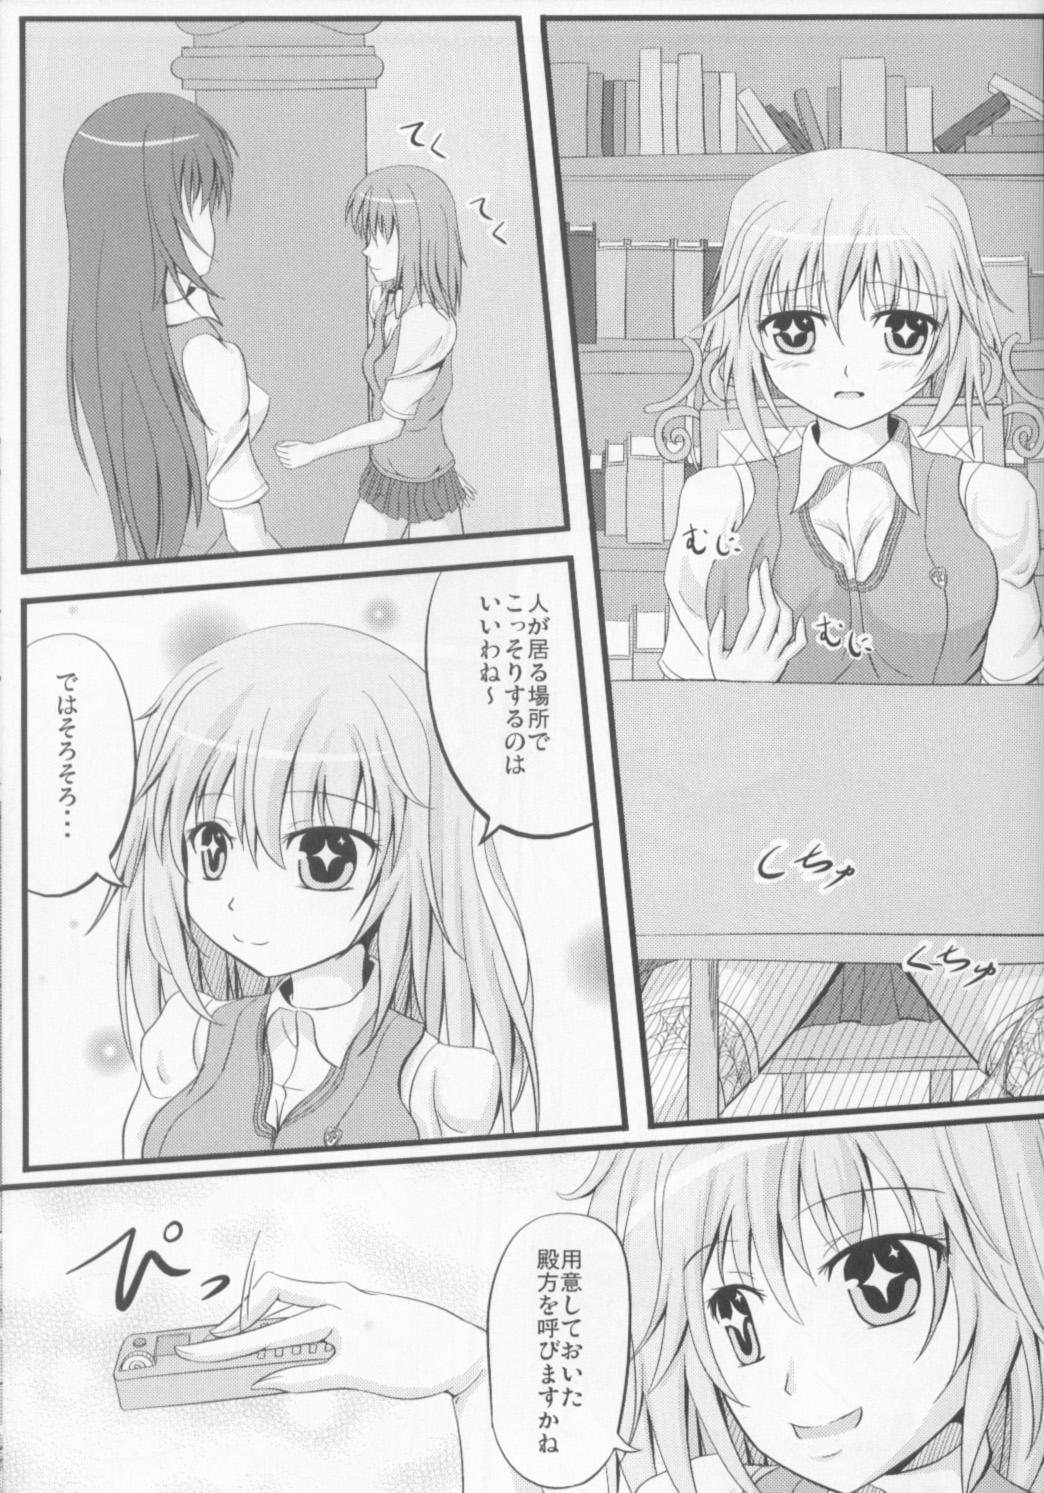 Two Shokuhou san ni Konna Mental Out saretai - Toaru kagaku no railgun Dildos - Page 4